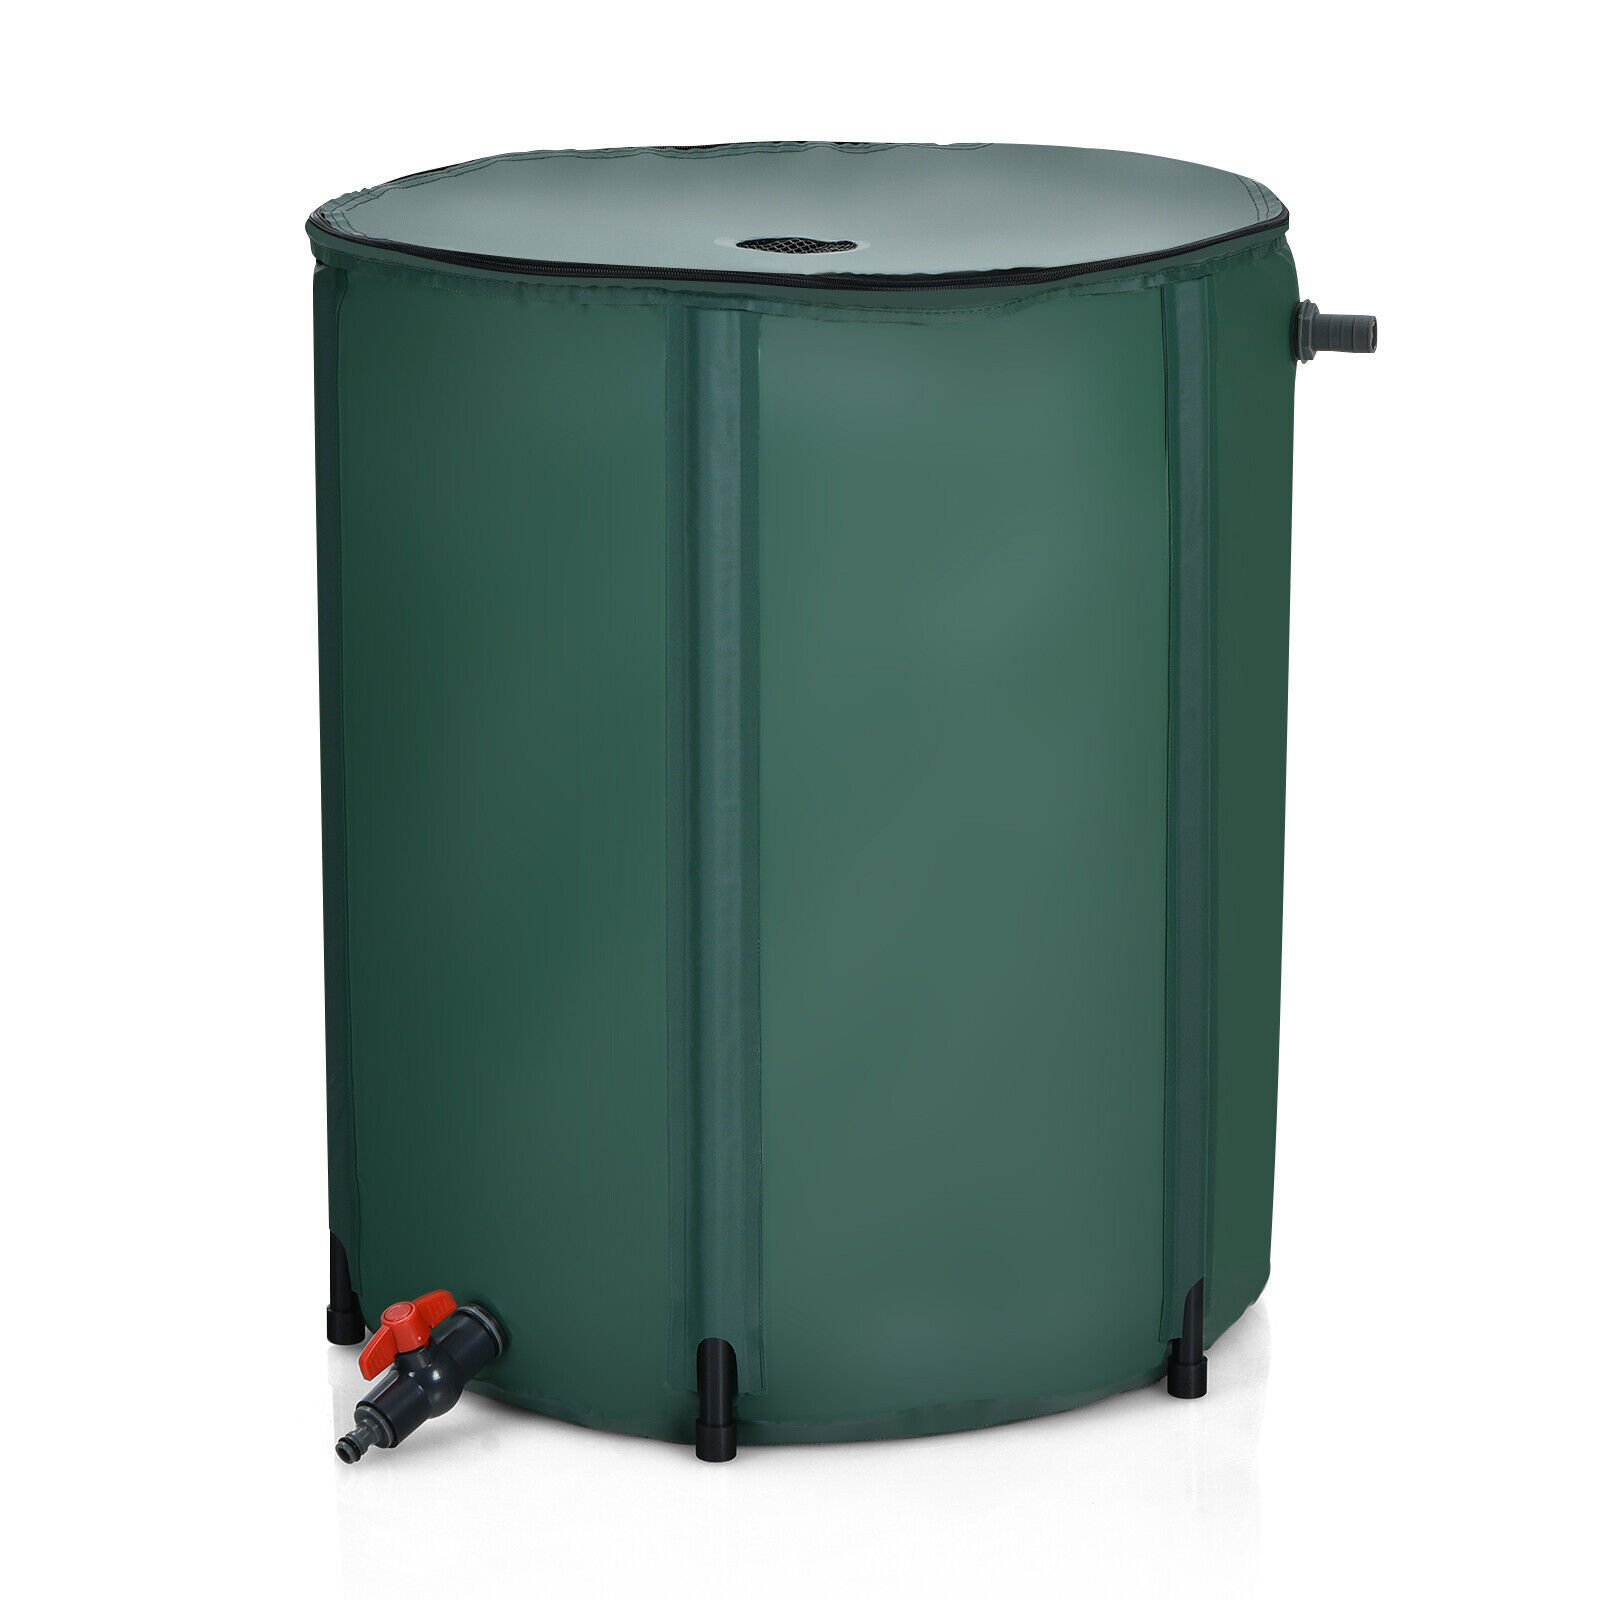 60 Gallon Portable Rain Barrel Water Collector Collapsible Tank Spigot Filter